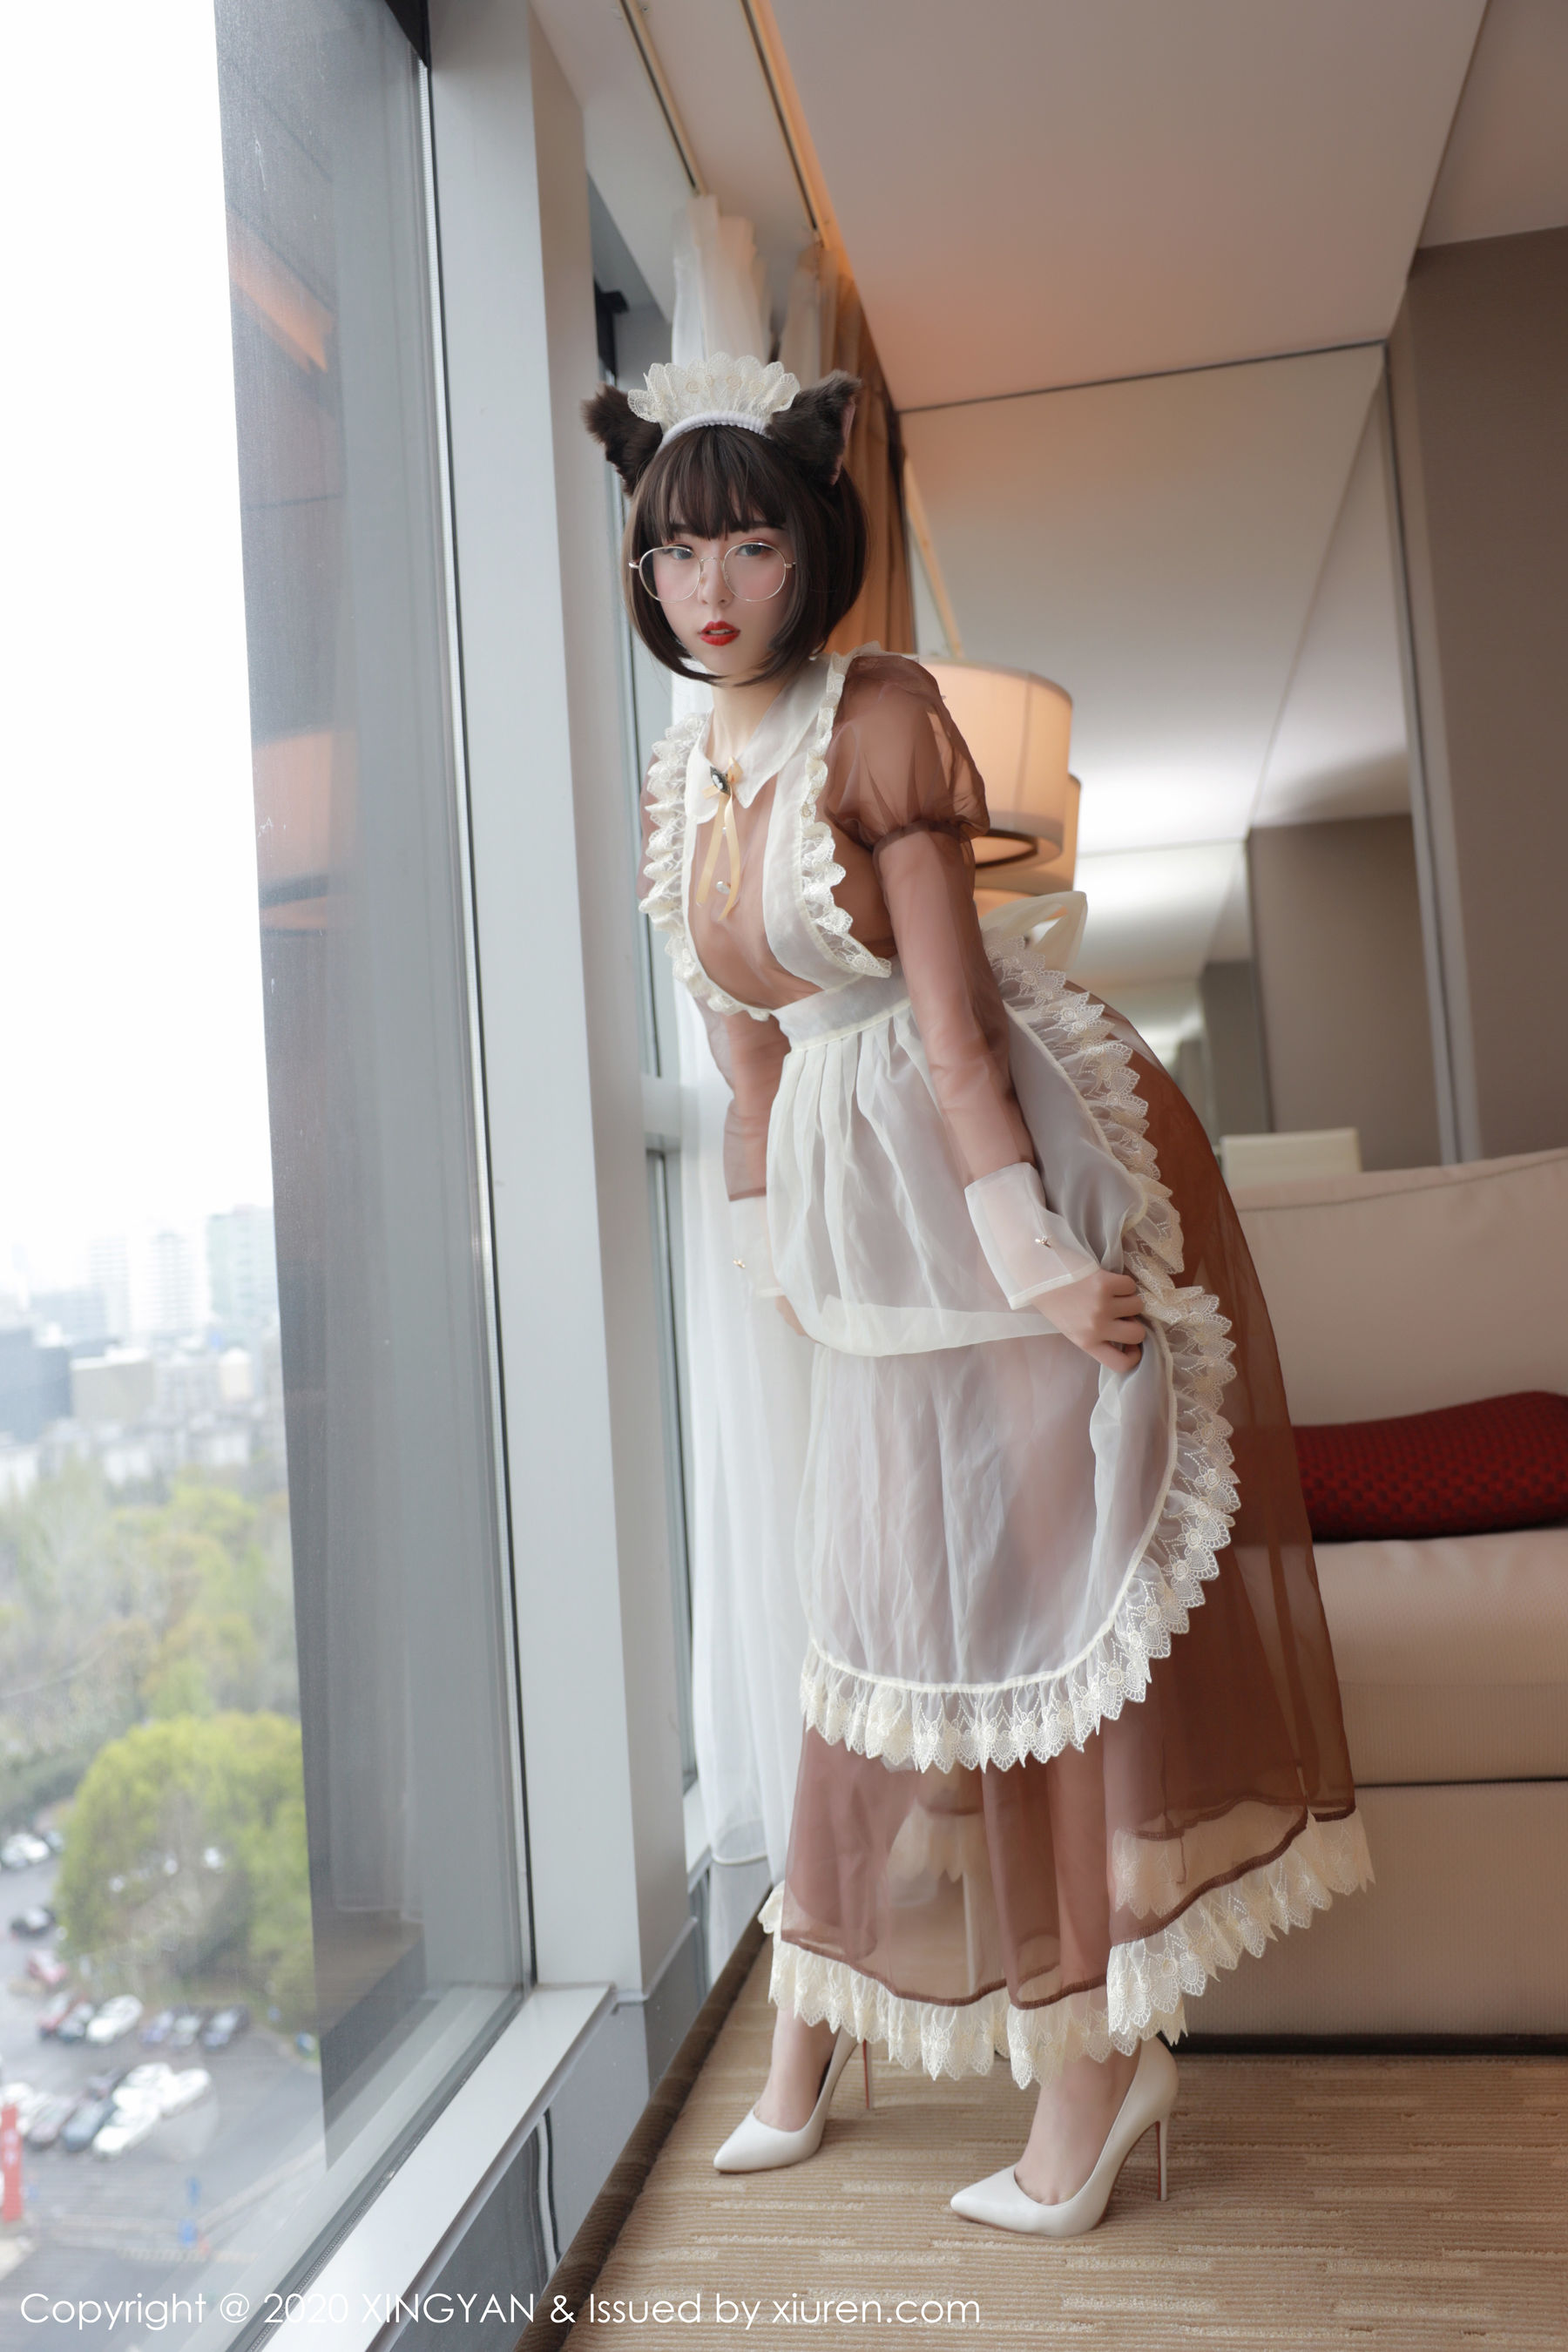 [人 xiuren] no.2160 good people non-lover “Lolita theme costume series” photo set